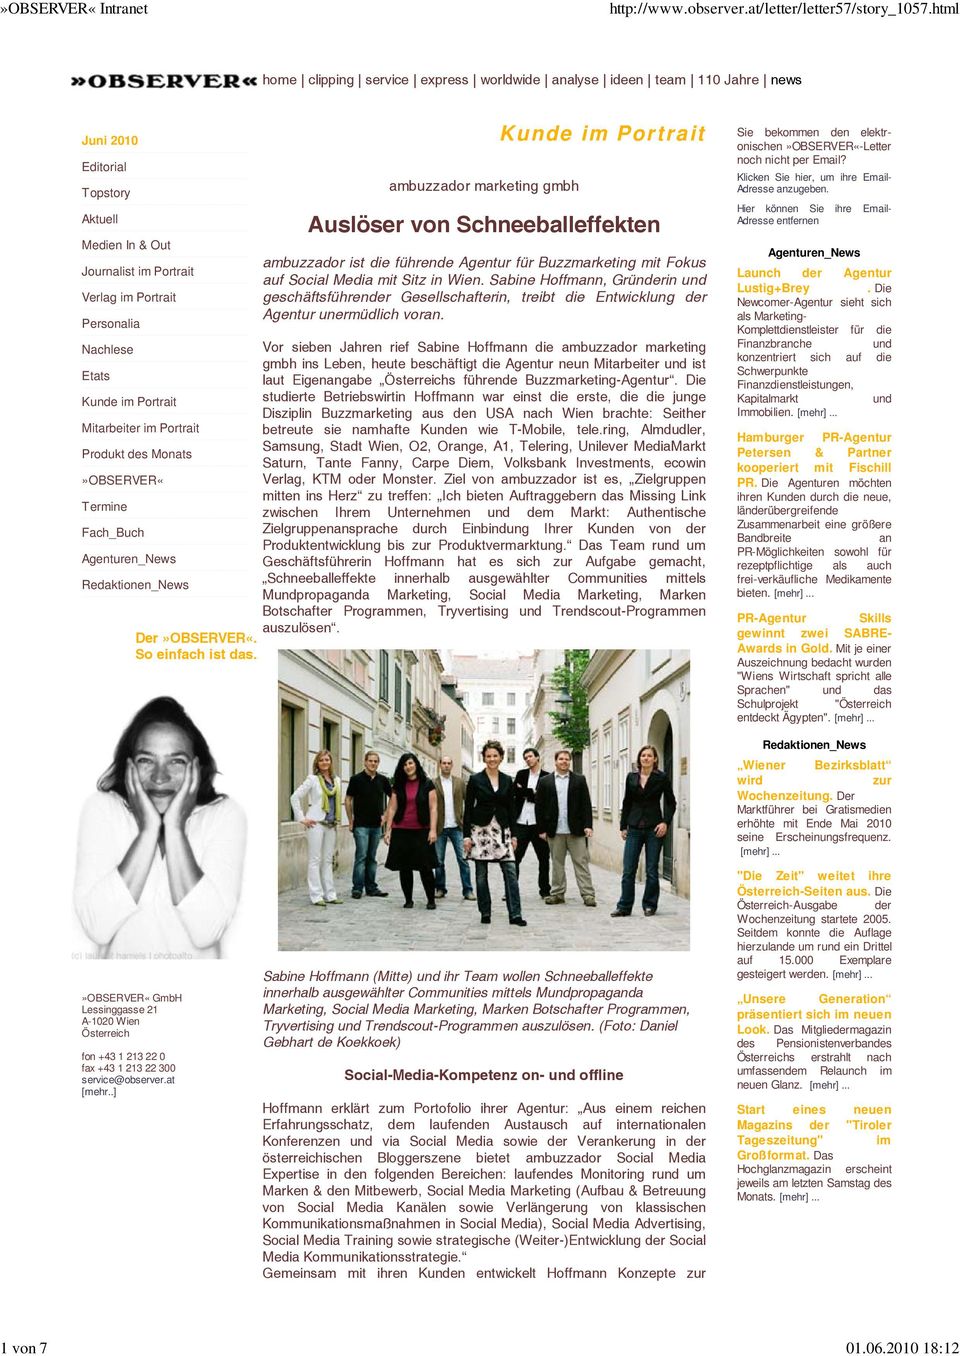 ambuzzador marketing gmbh Kunde im Portrait Auslöser von Schneeballeffekten ambuzzador ist die führende Agentur für Buzzmarketing mit Fokus auf Social Media mit Sitz in Wien.